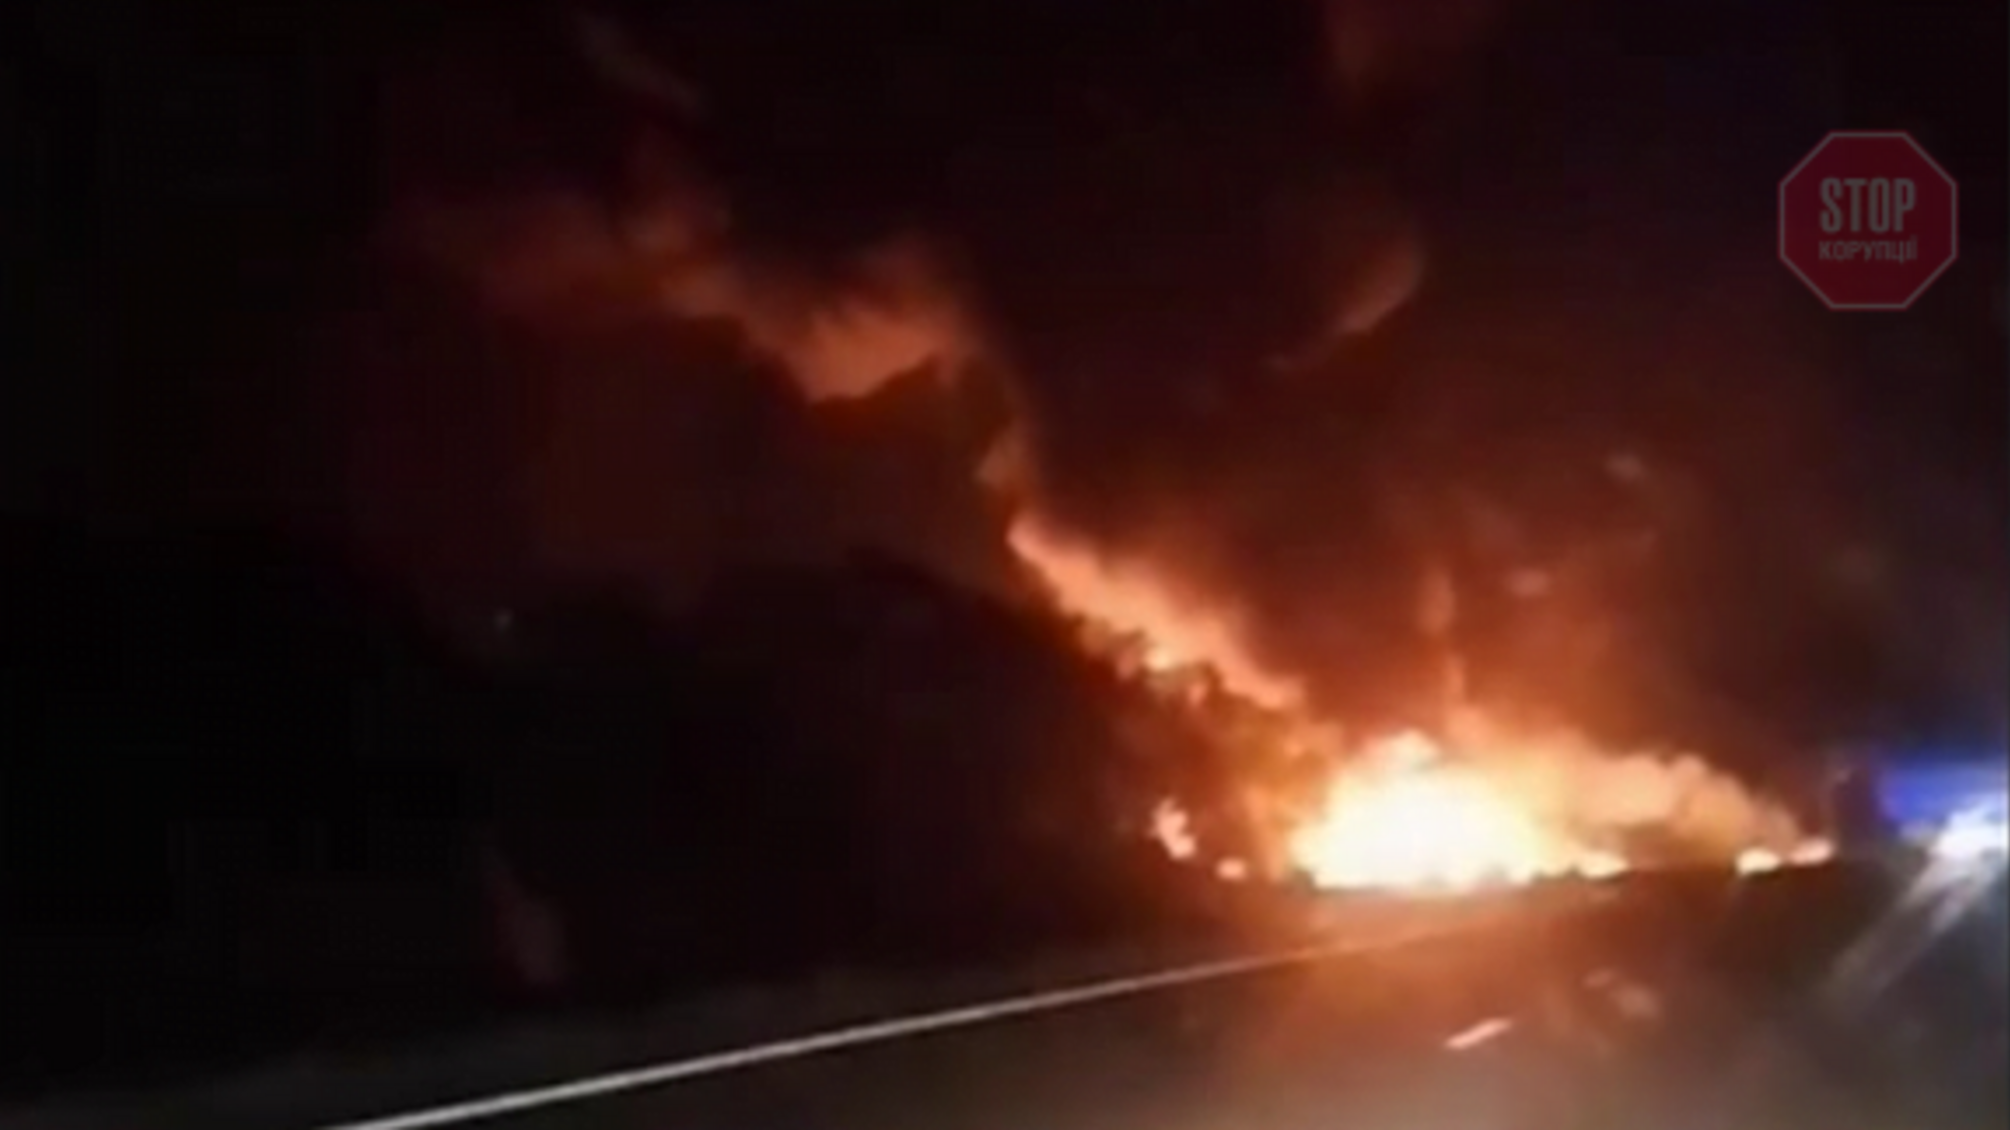 На Харківщині розбився літак (відео)